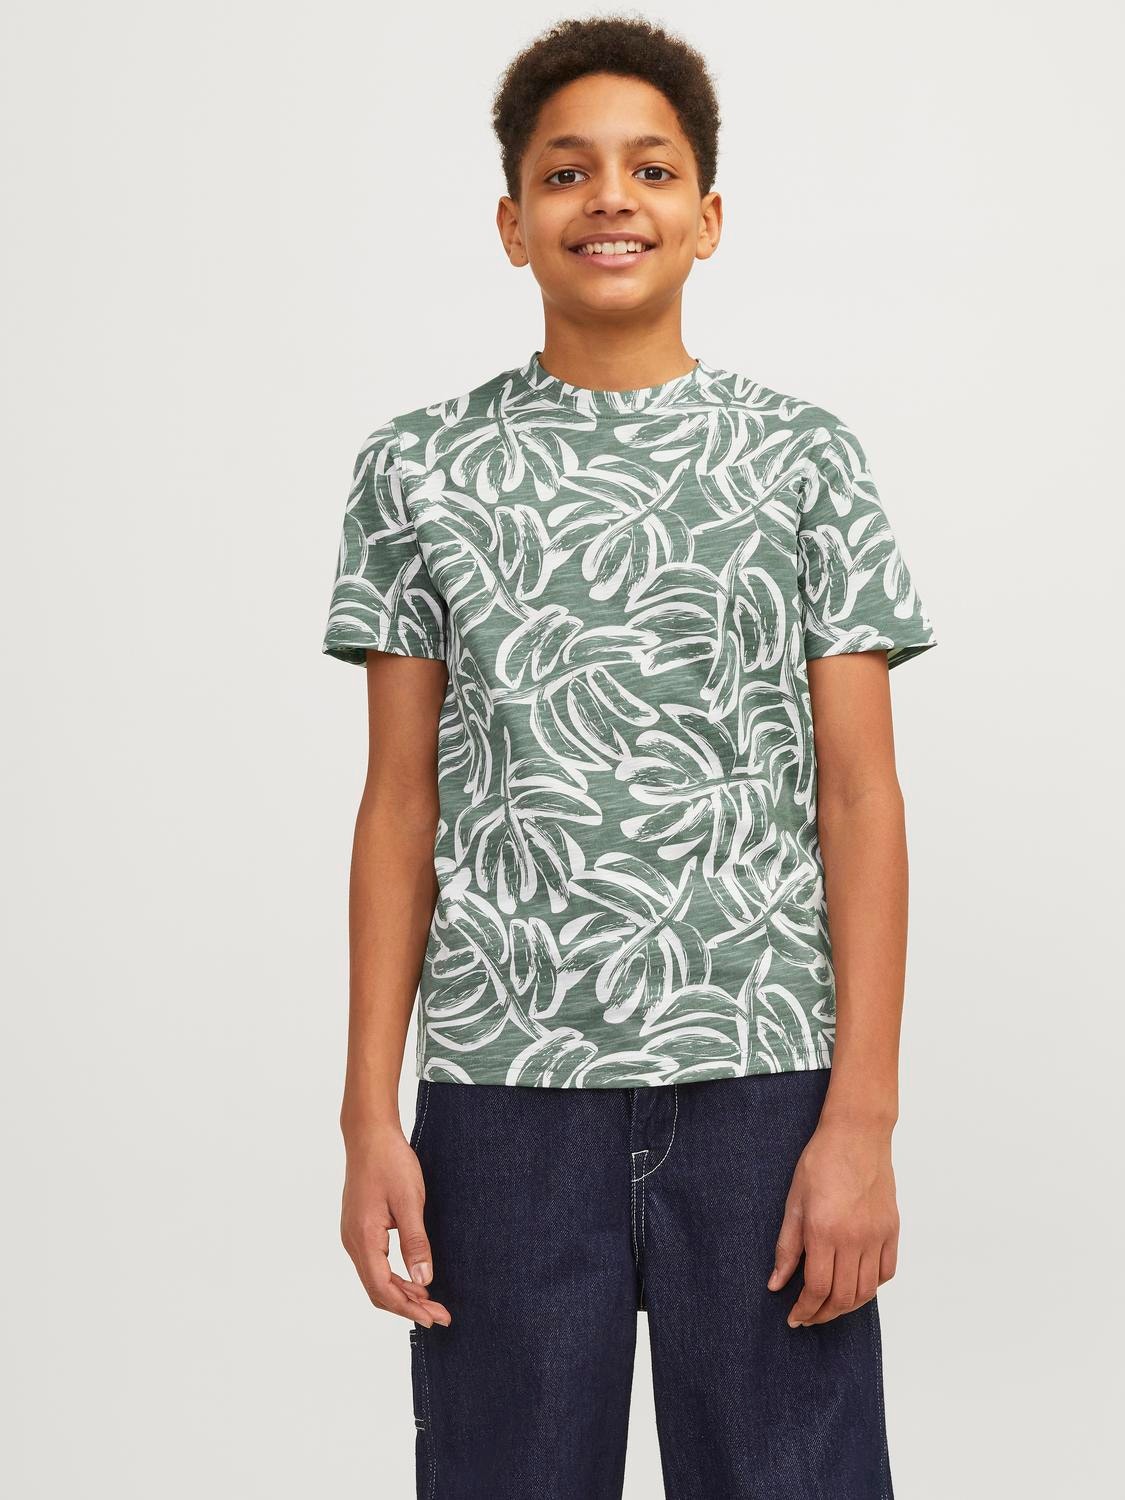 Jack & Jones All Over Print T-shirt Voor jongens -Laurel Wreath - 12253974